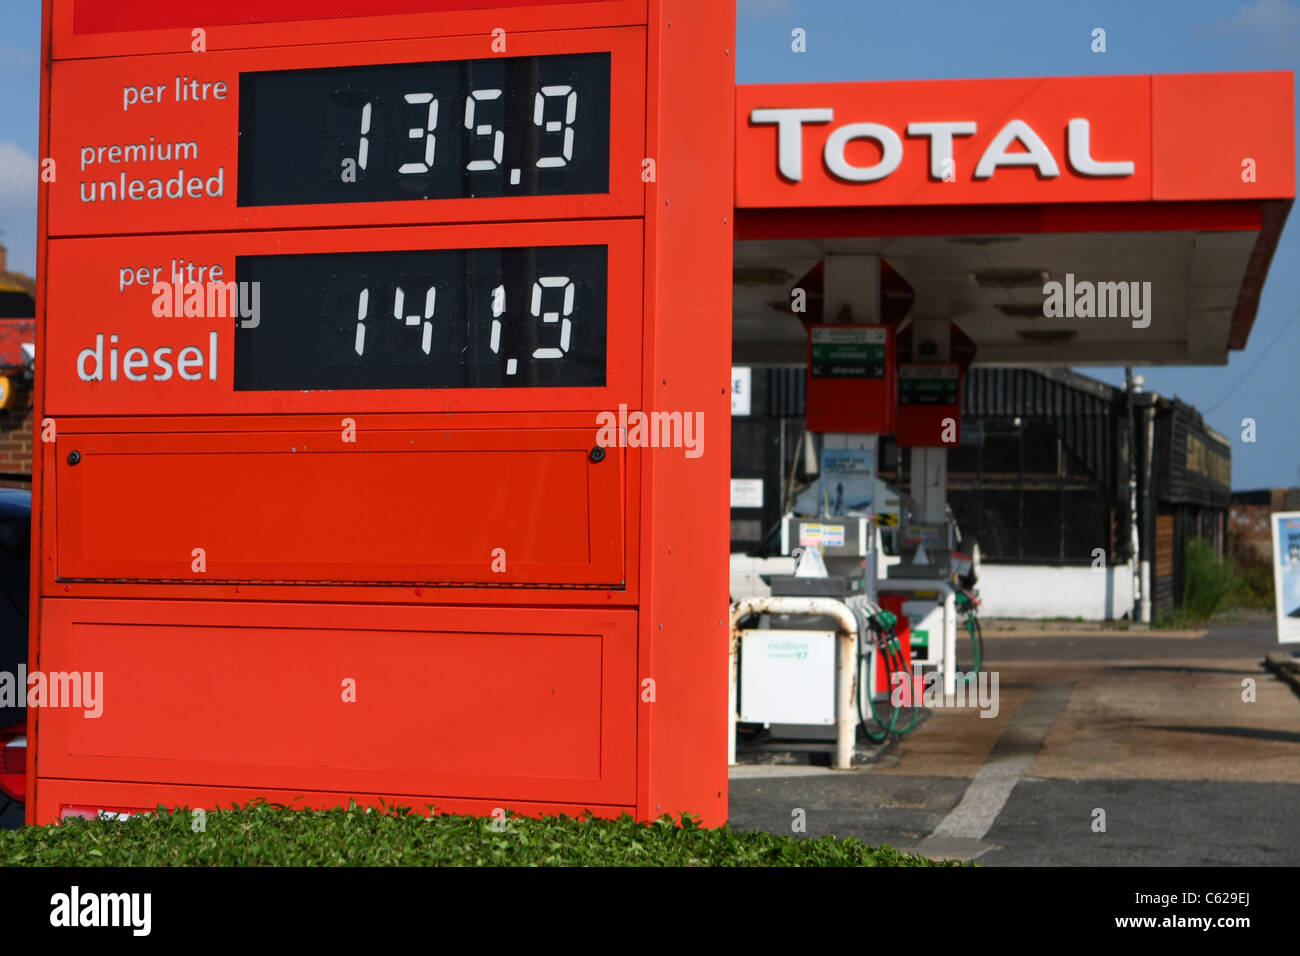 Une vue de côté d'une station essence Total montrant le prix de l'essence  et diesel Photo Stock - Alamy